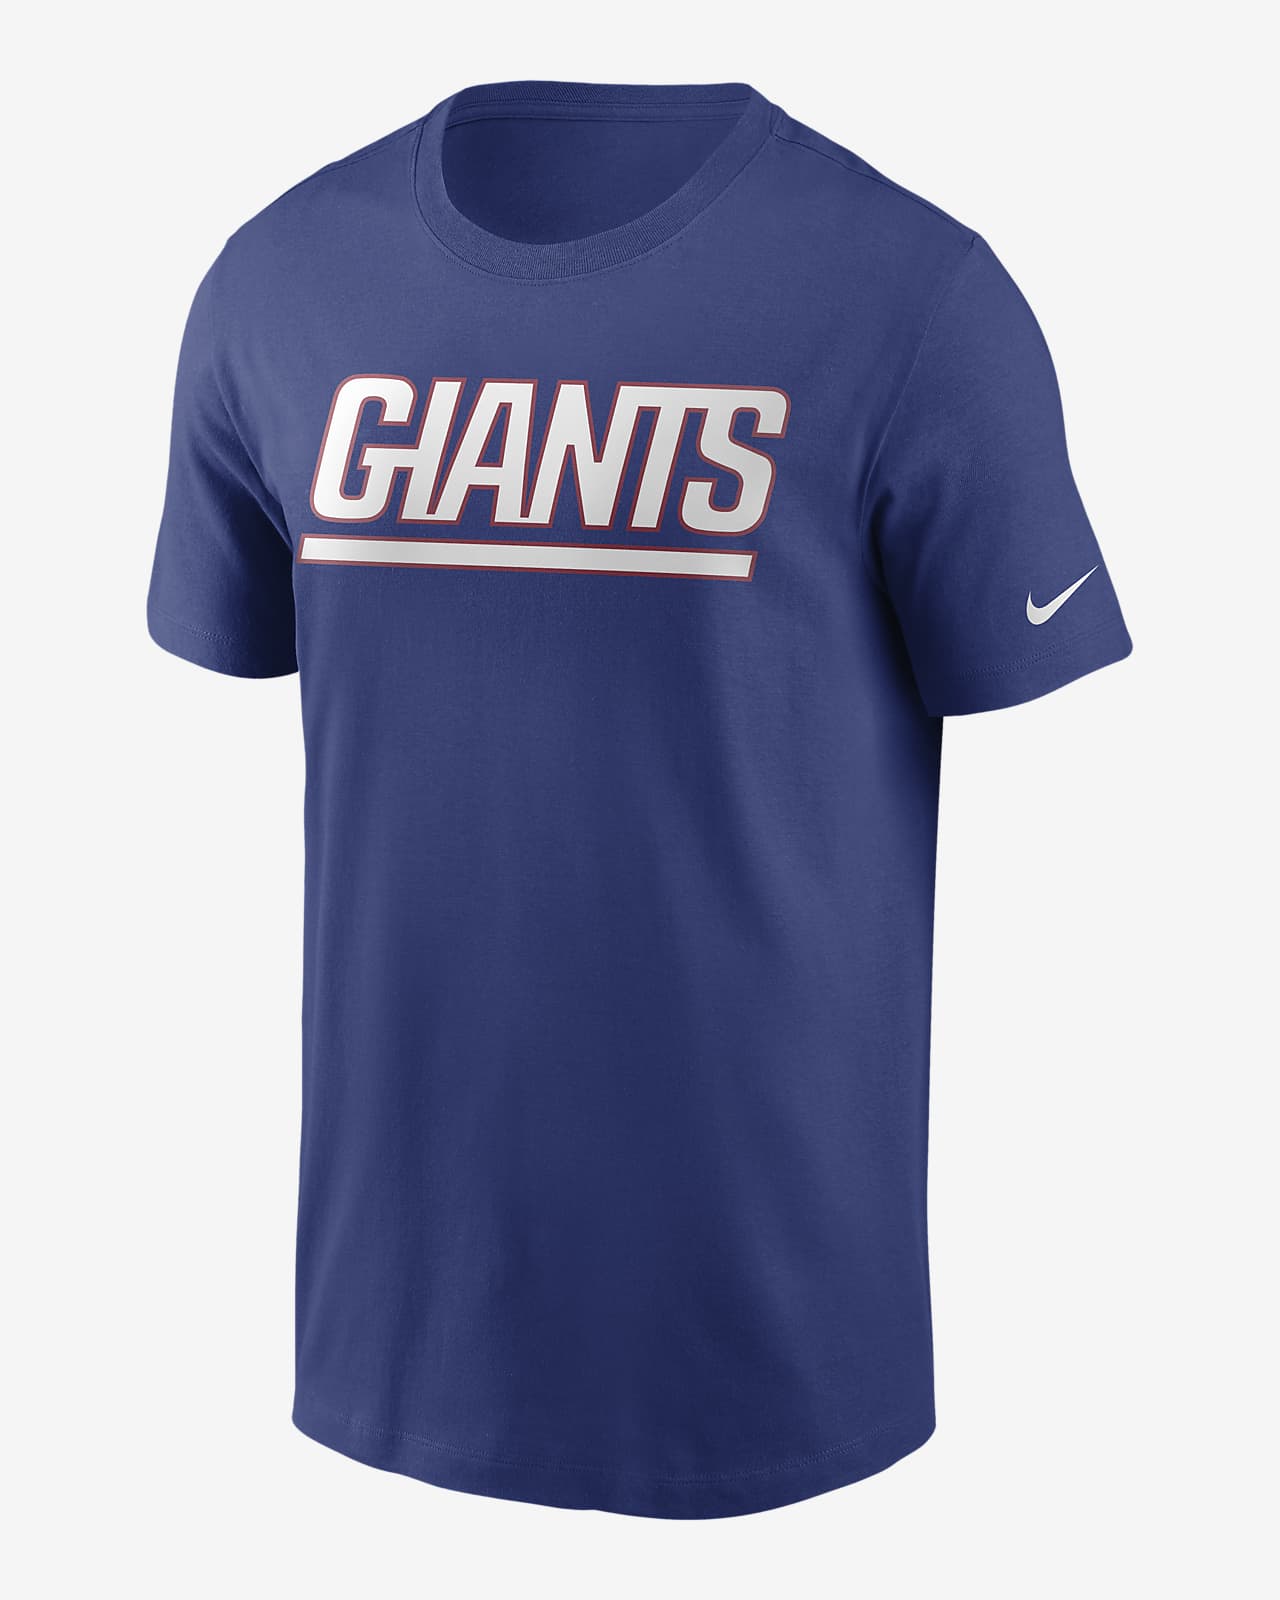 Nike (NFL New York Giants) Men's T-Shirt